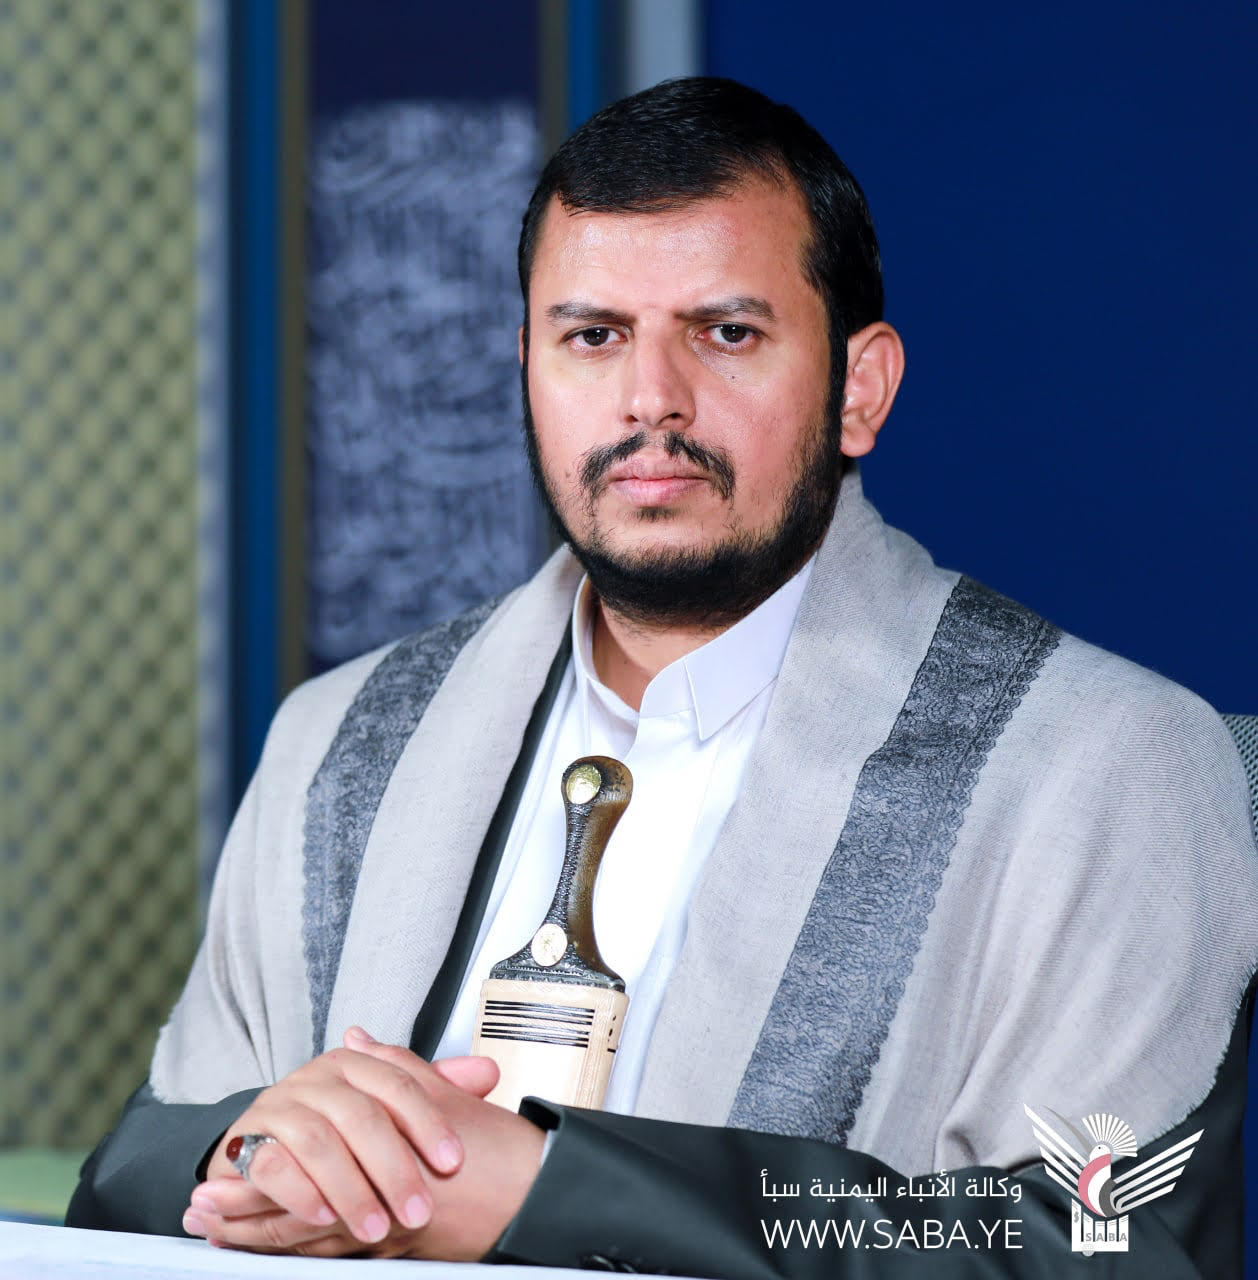 Revolutionsführer gratuliert dem jemenitischen Volk und der islamischen Nation anlässlich des Hijri-Neujahrs